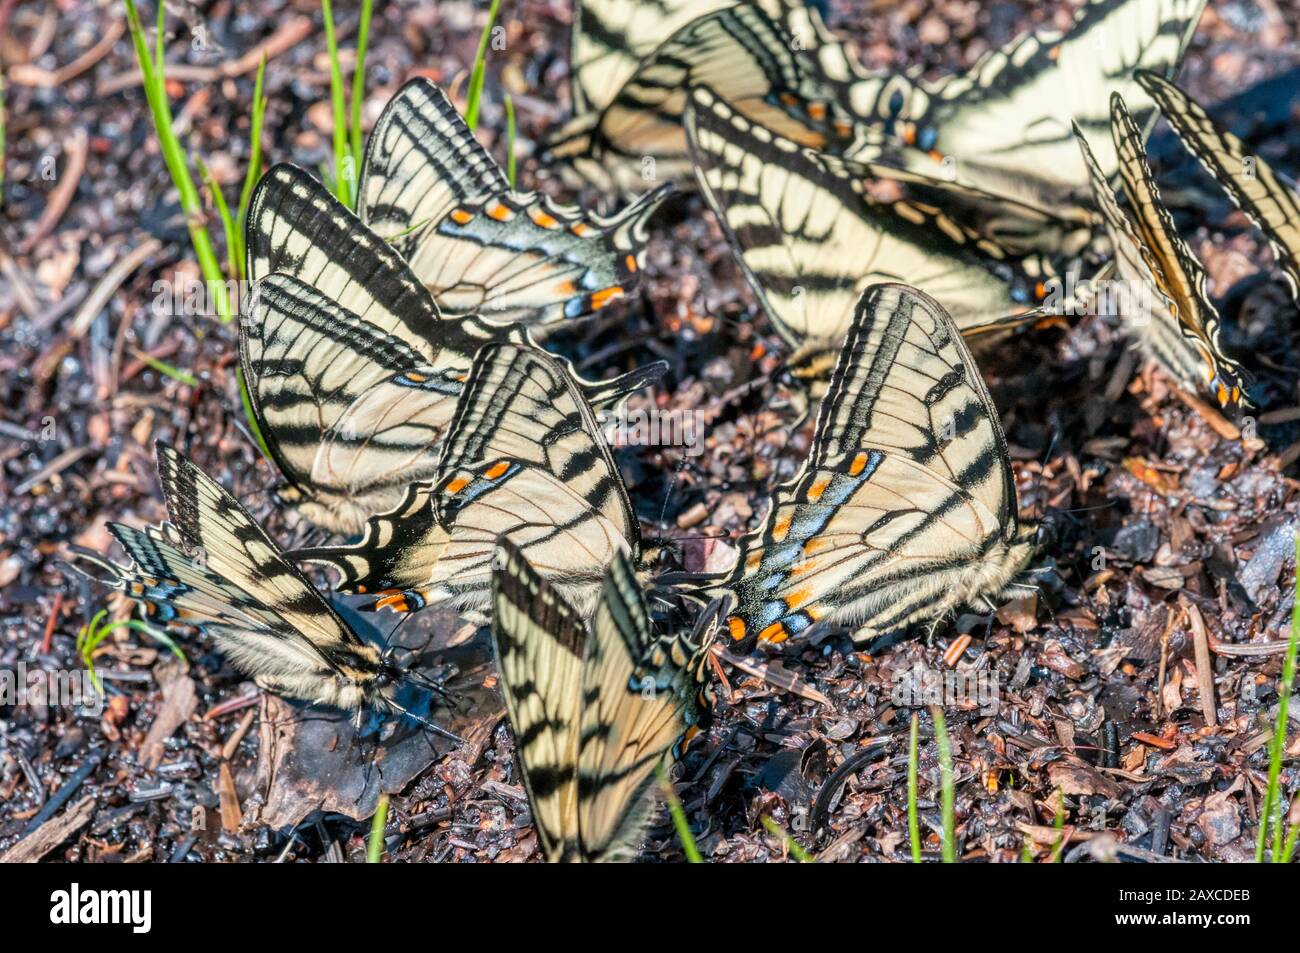 Coda di rondone canadese, Papilio canadensis, farfalle che si radunano in una zona di terreno umido a Terranova, Canada. Foto Stock